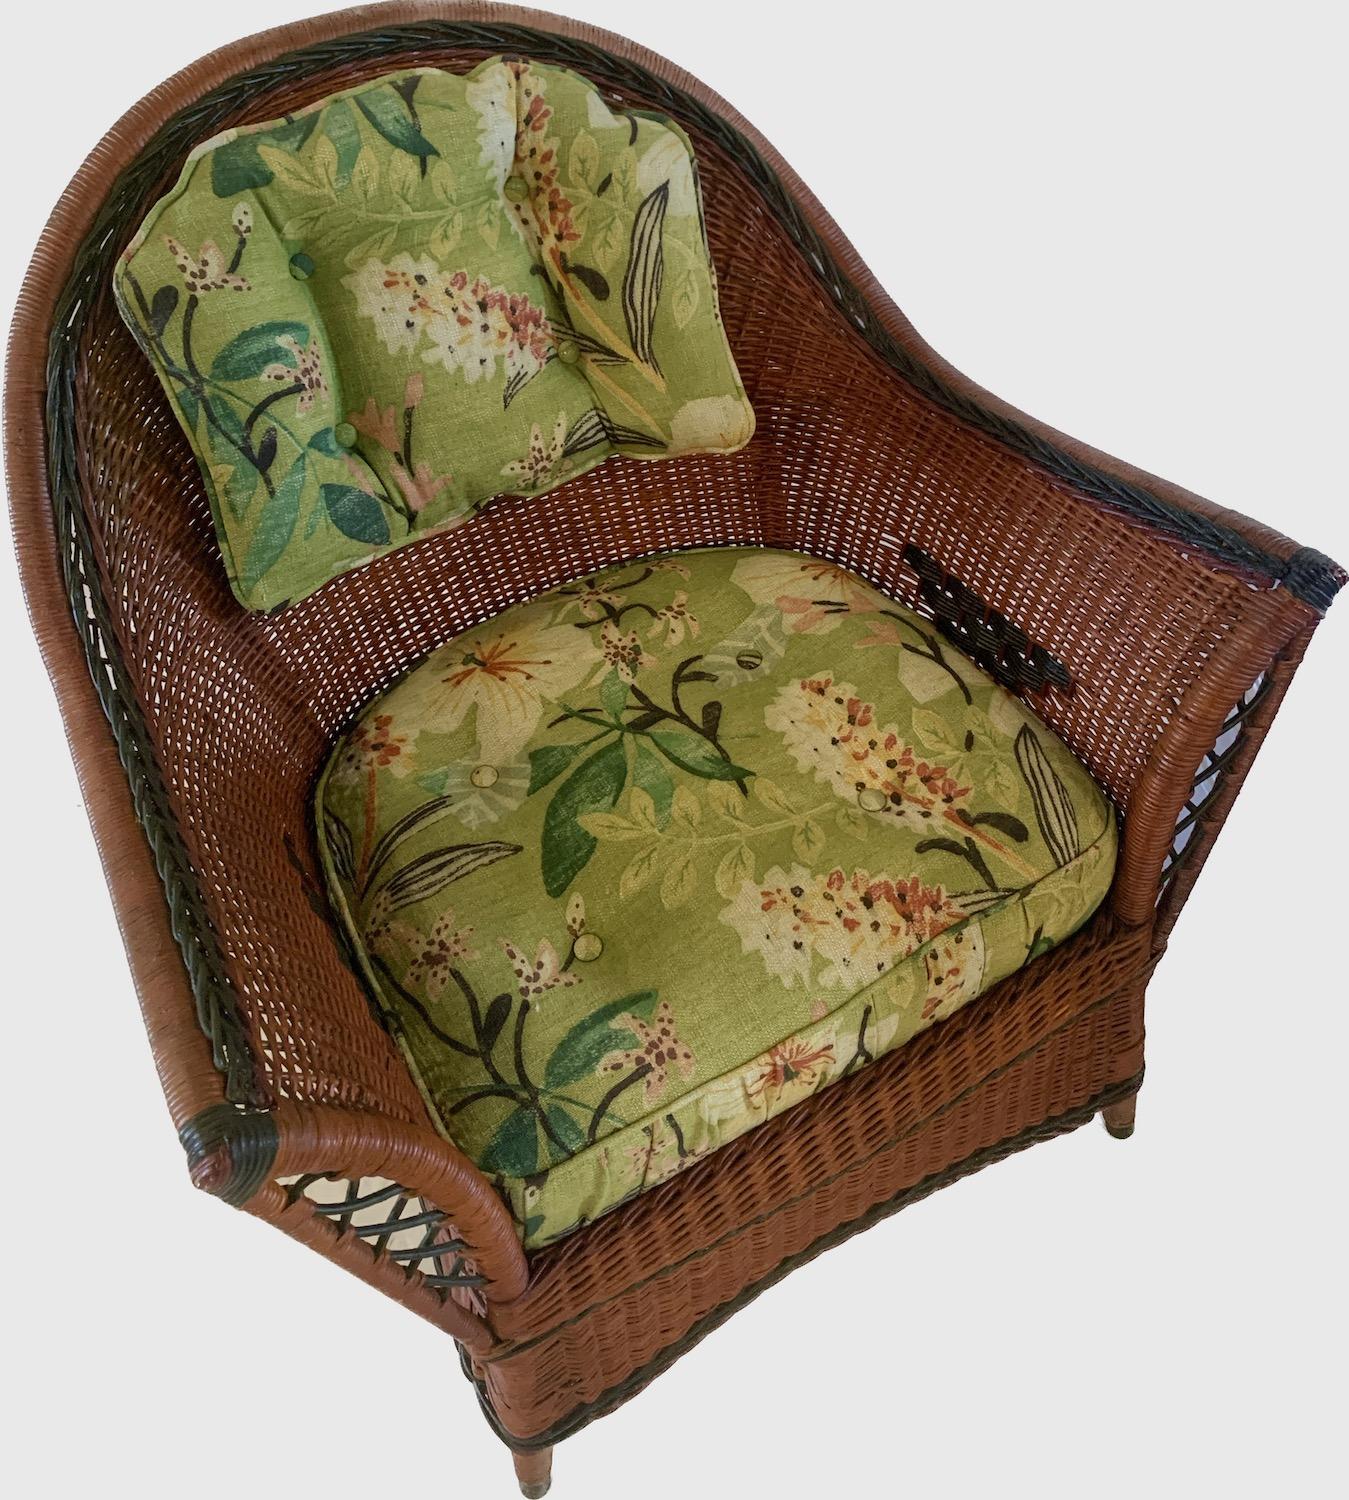 Il s'agit d'un fauteuil en osier naturel de très bonne qualité avec des bordures et des motifs décorés à la peinture. Il a été fabriqué par la Heywood Wakefield Company à Gardner Massachusetts à la fin des années 20 ou au début des années 20. Il